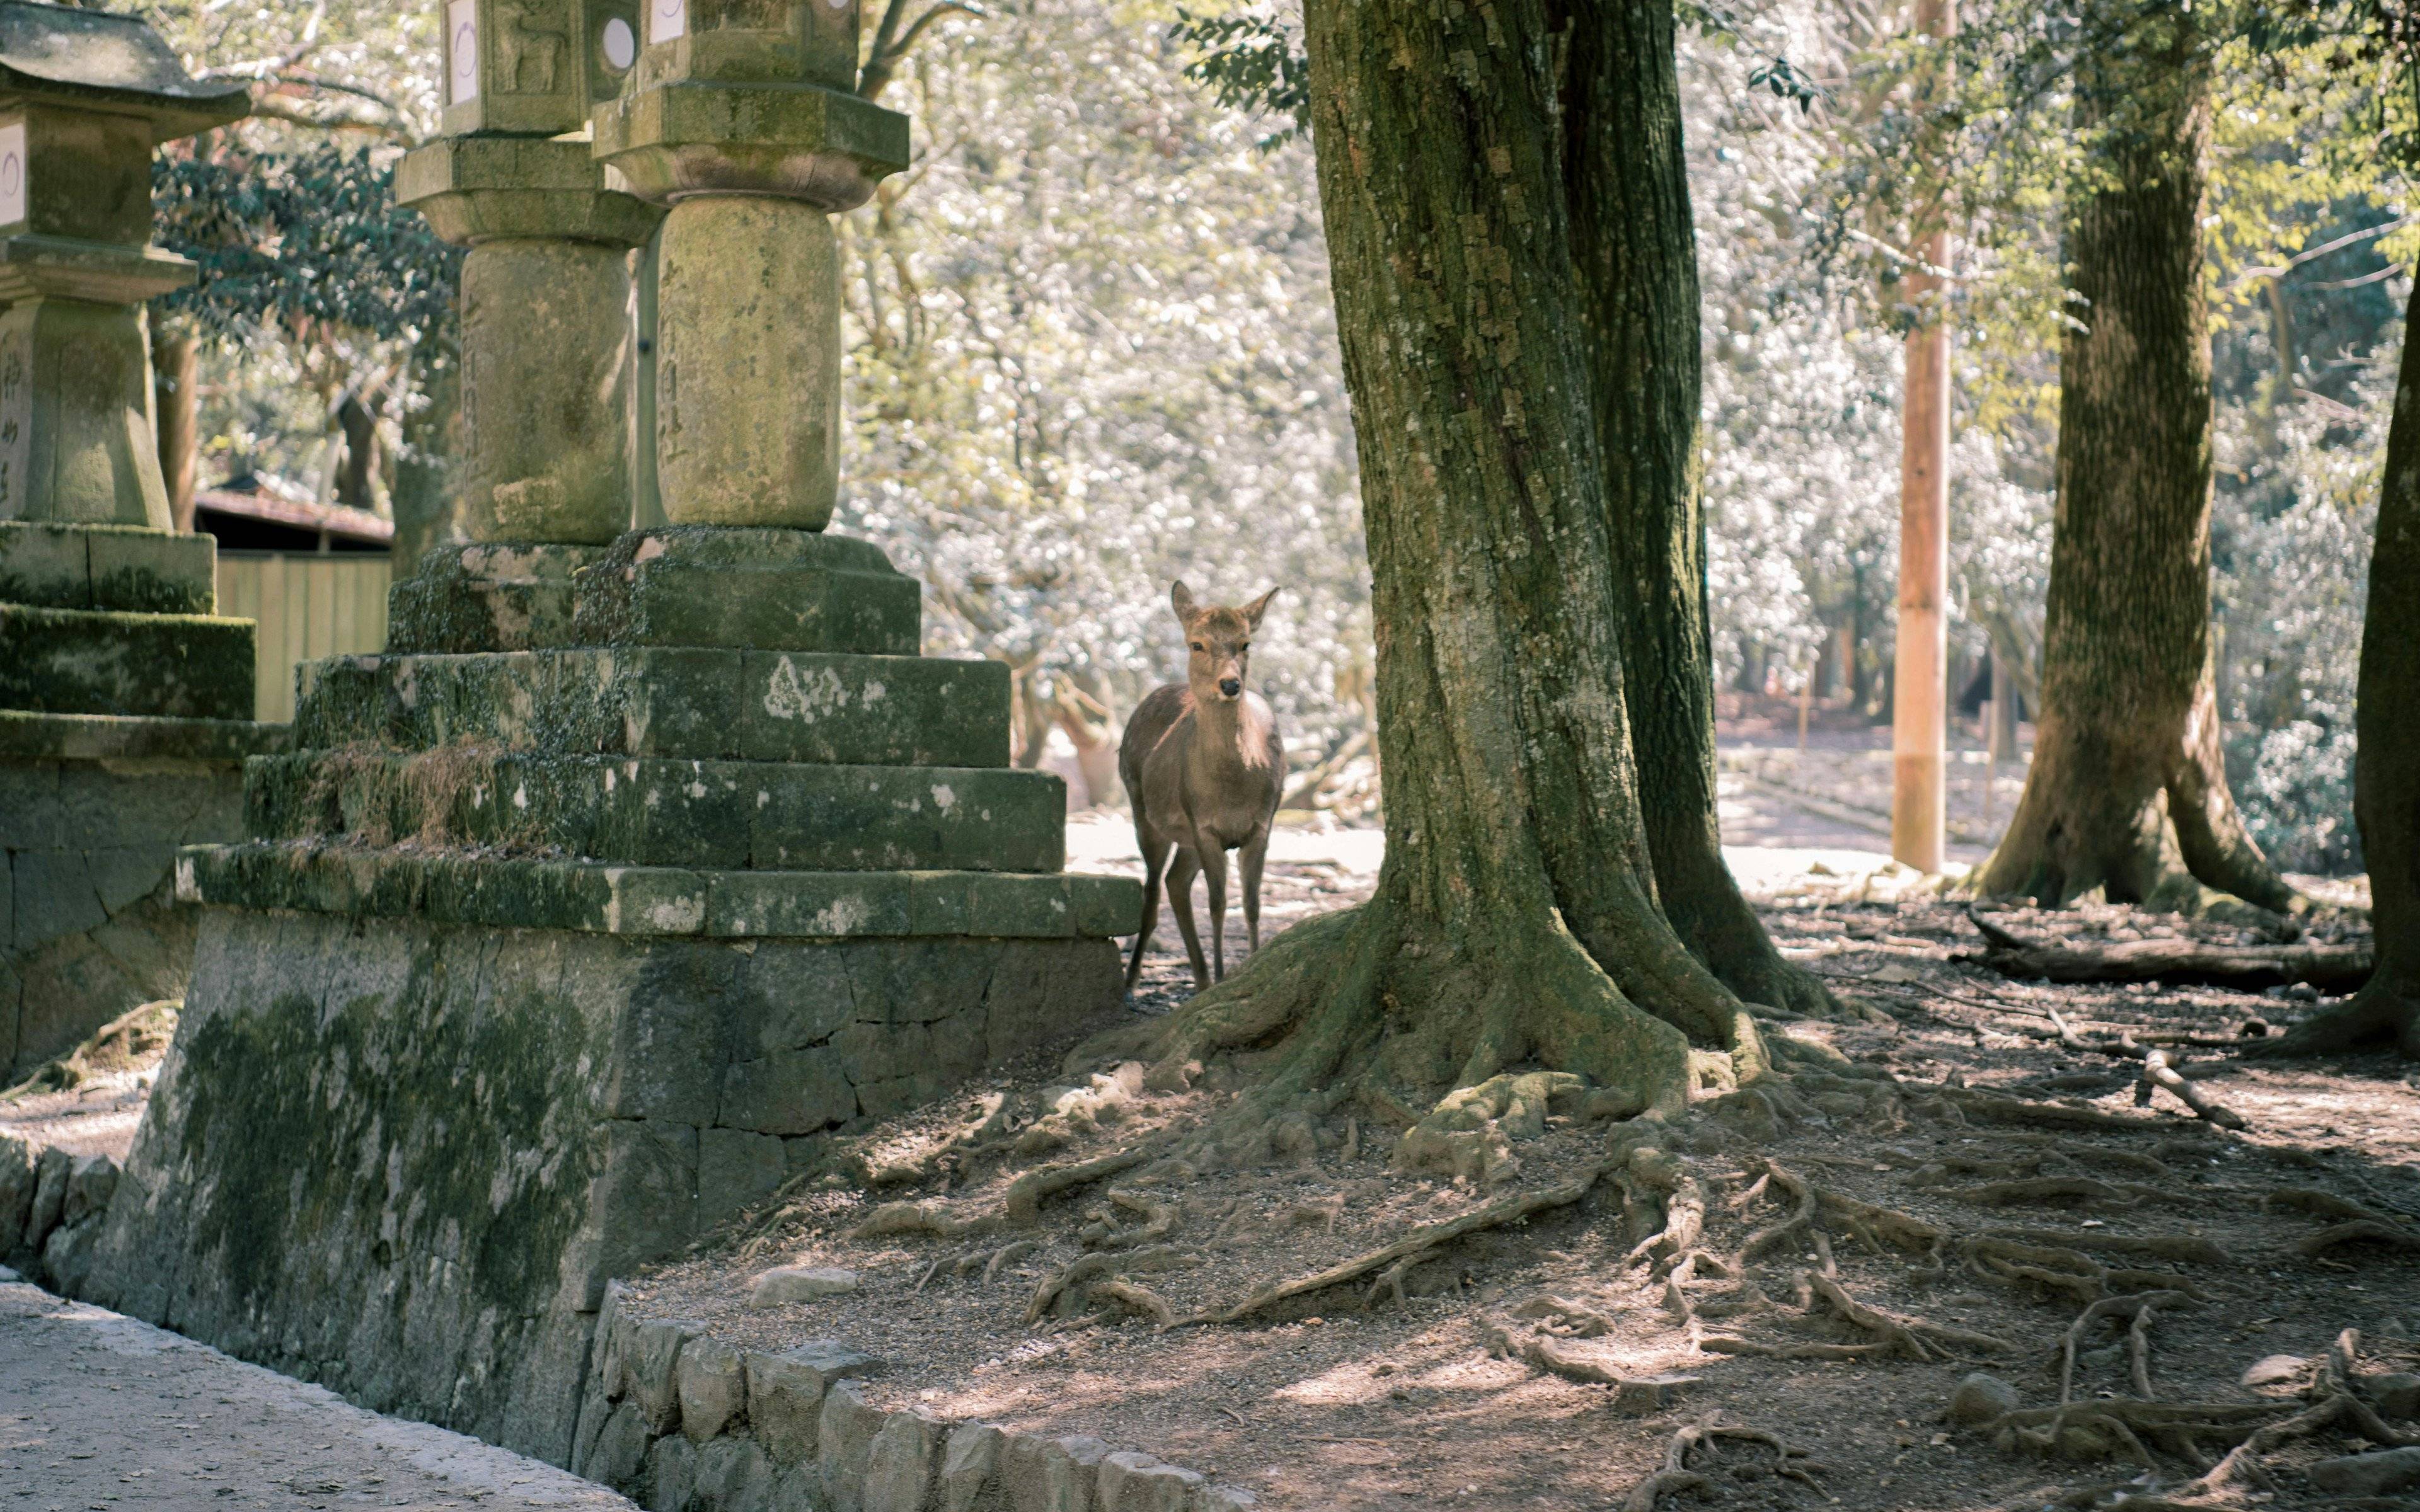 Excursion optionnelle à Nara, première capitale et royaume des cerfs